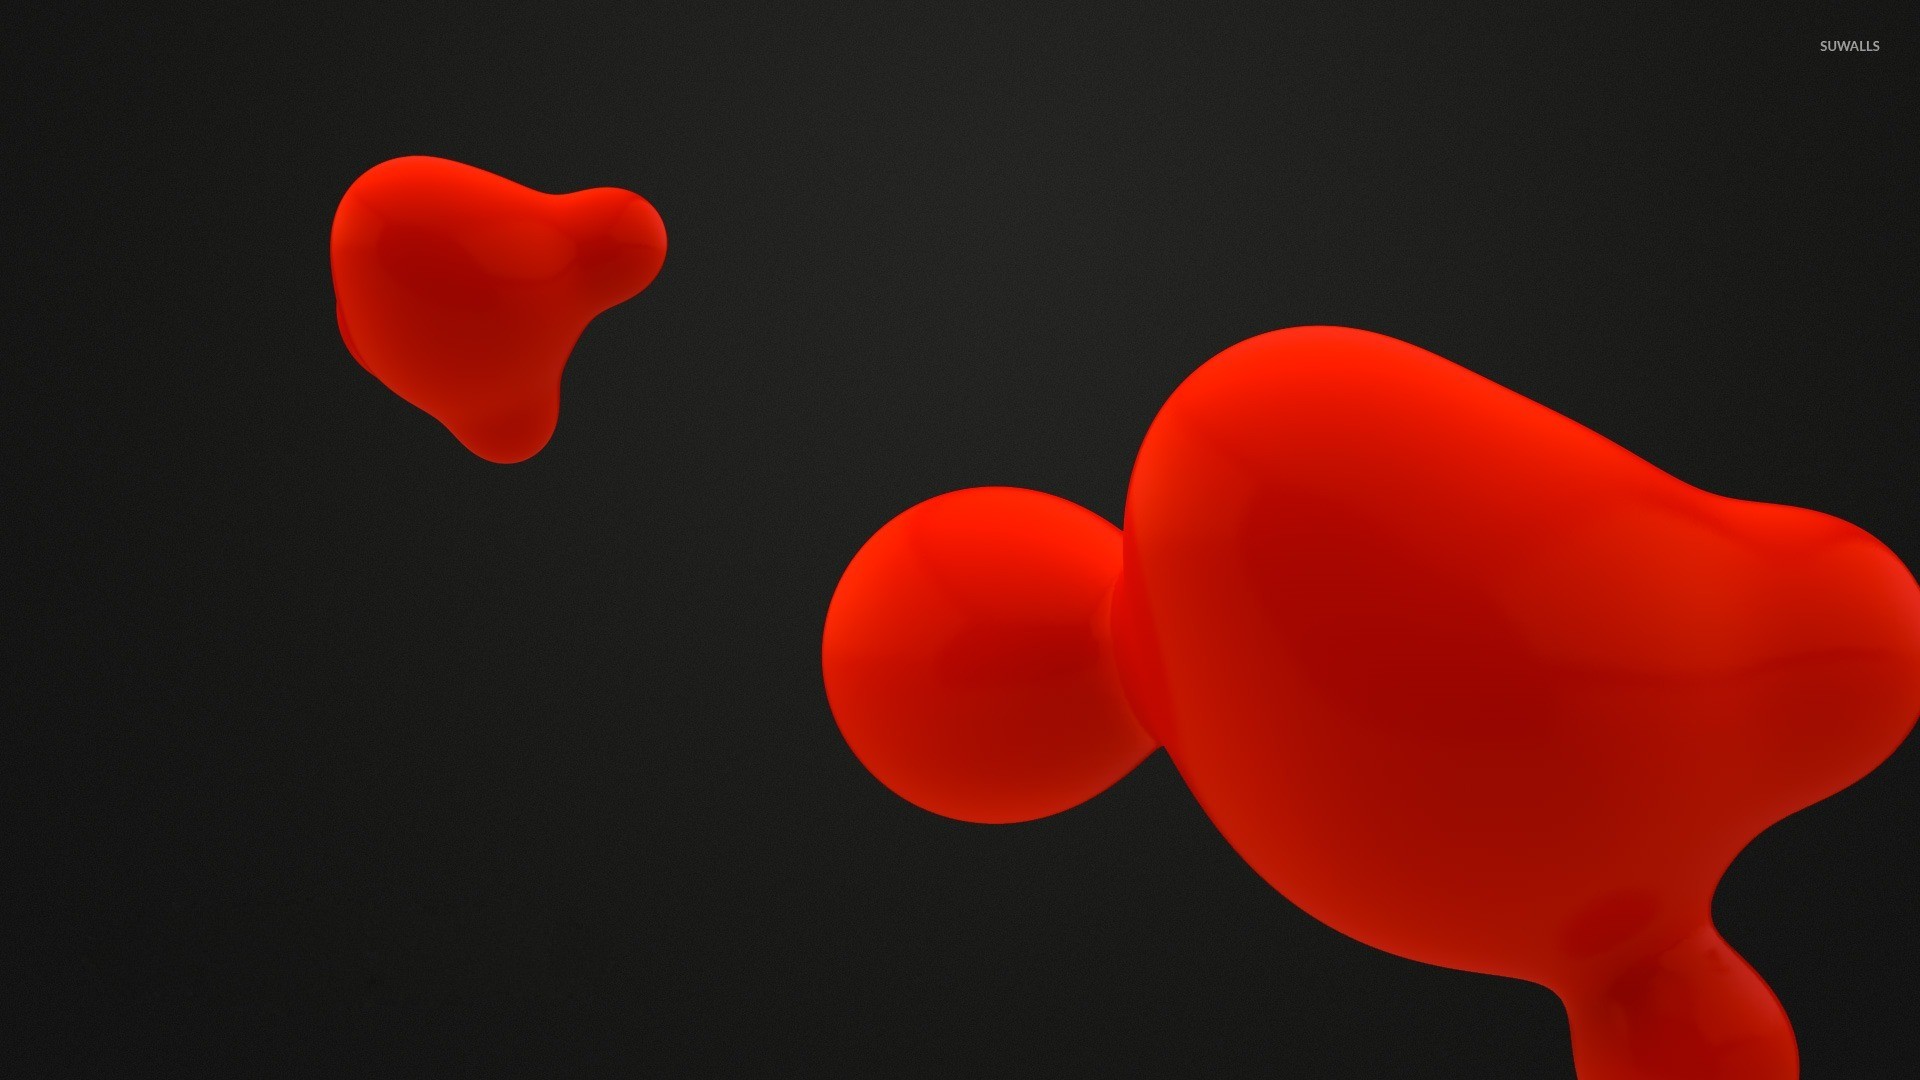 Red liquid shapes wallpaper jpg